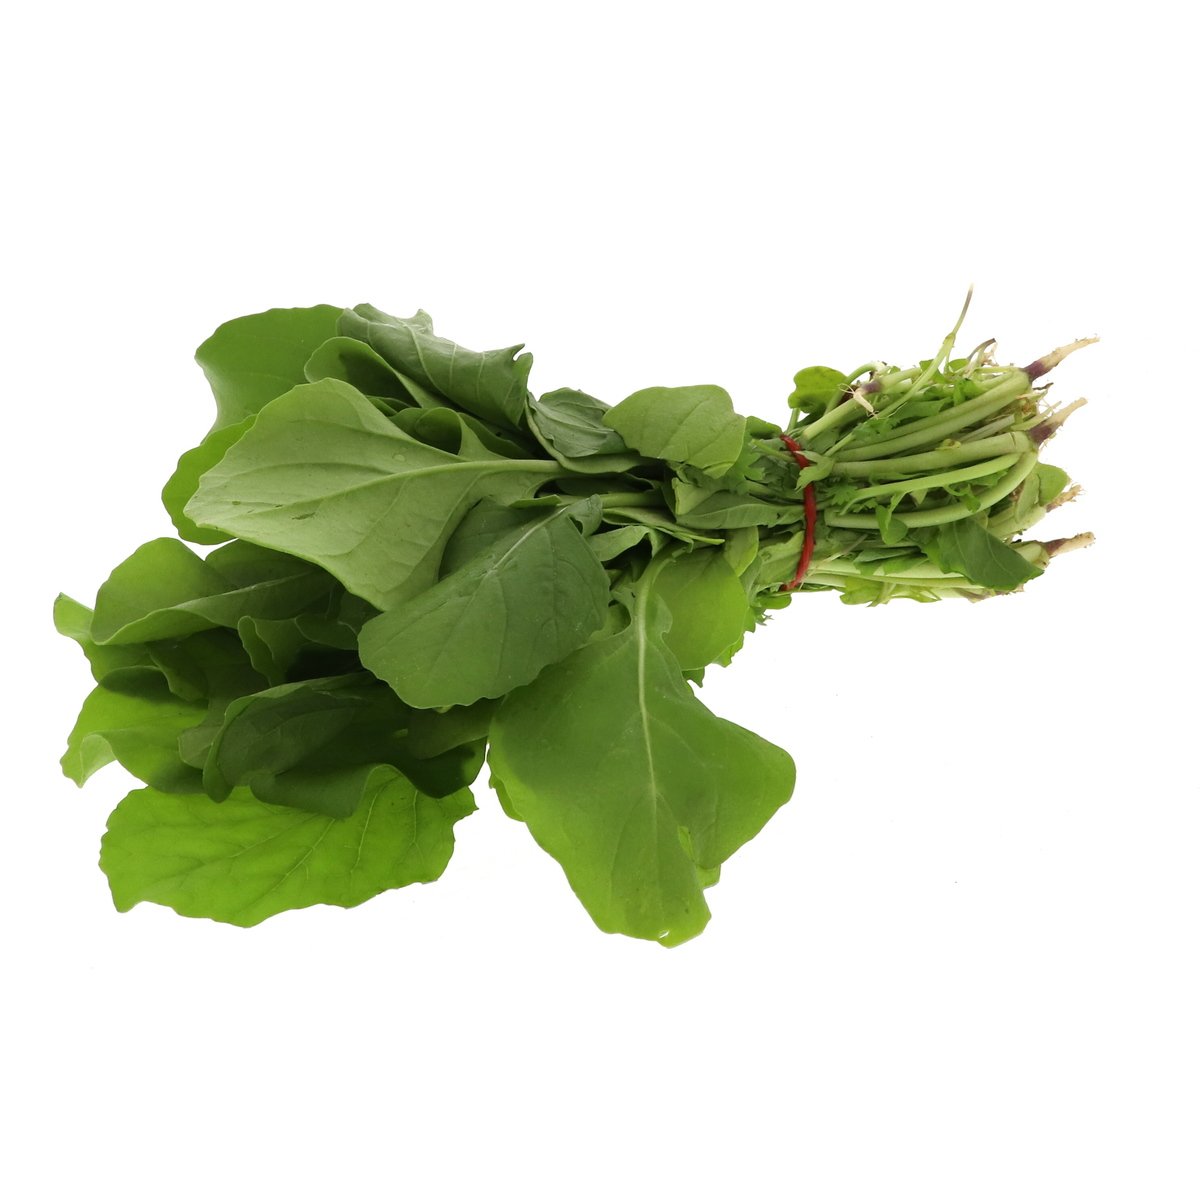 اشتري قم بشراء جرجير 1 حزمة Online at Best Price من الموقع - من لولو هايبر ماركت Local Herbs / Leaves في الامارات